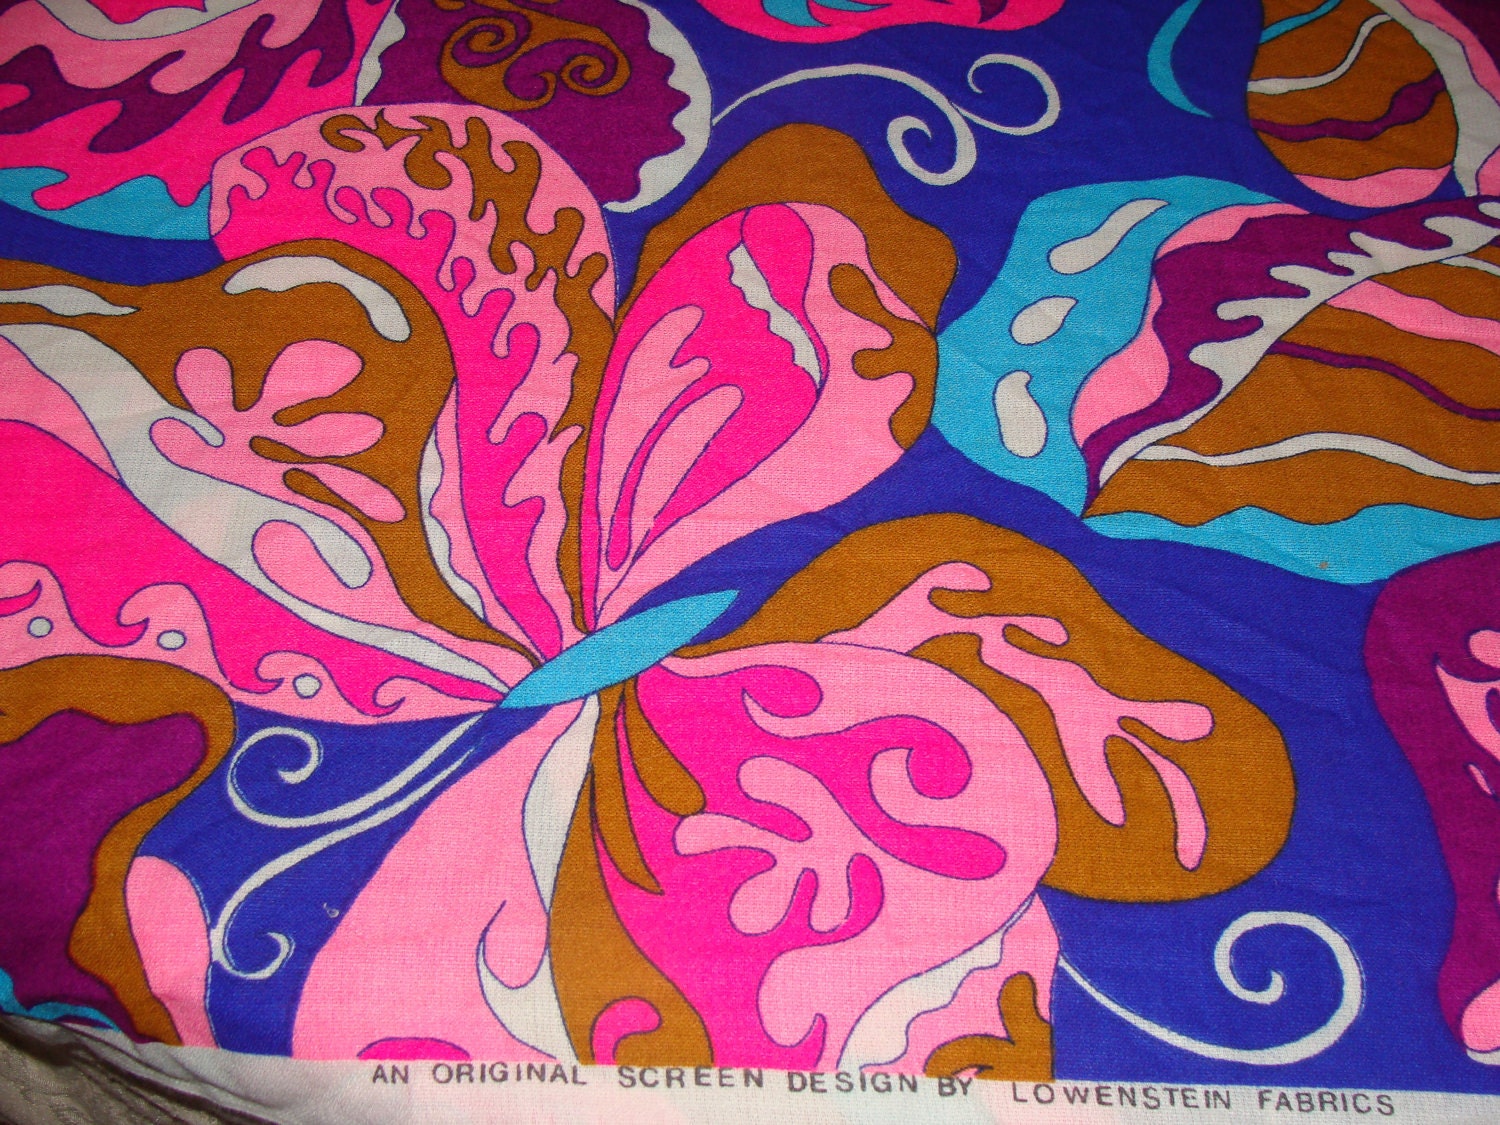 Vintage 1960s Super Hot Pink Huge butterflies Psychadelic Hippie Lowenstein Screenprint Hippie Flower Power Retro Fabric Yardage 44 x 22